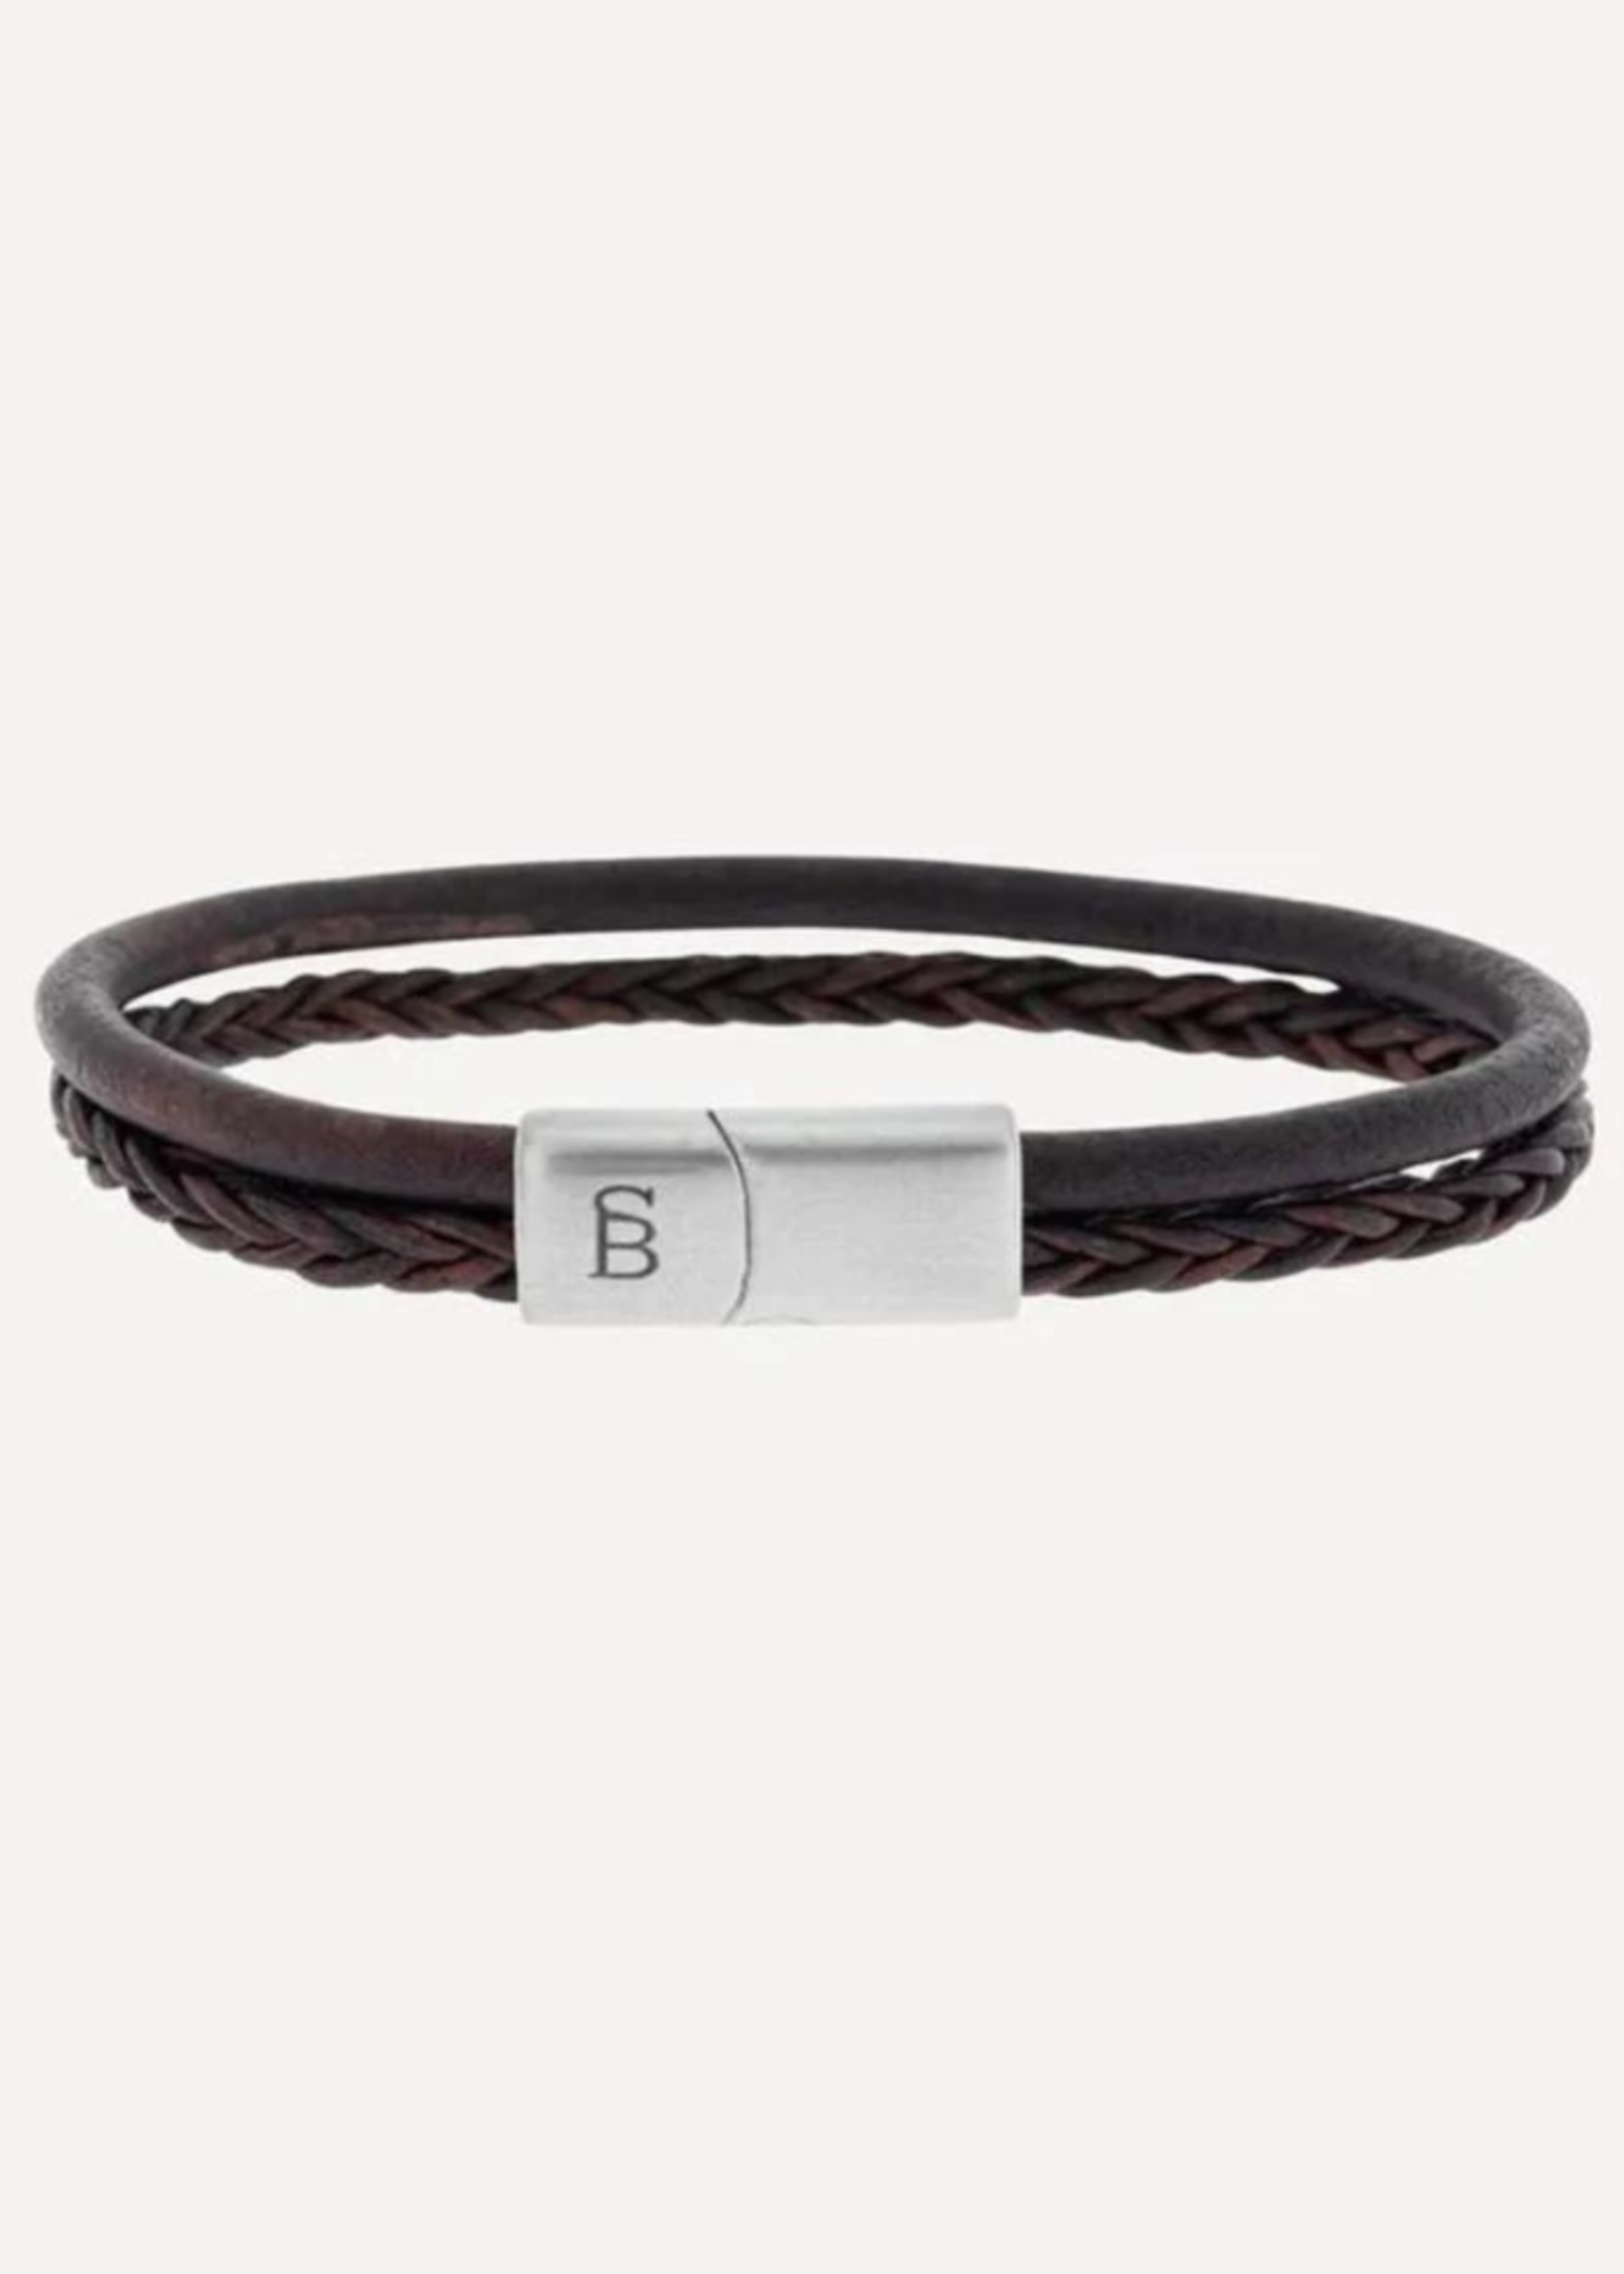 STEEL & BARNETT Leather Bracelet DENBY - Brown